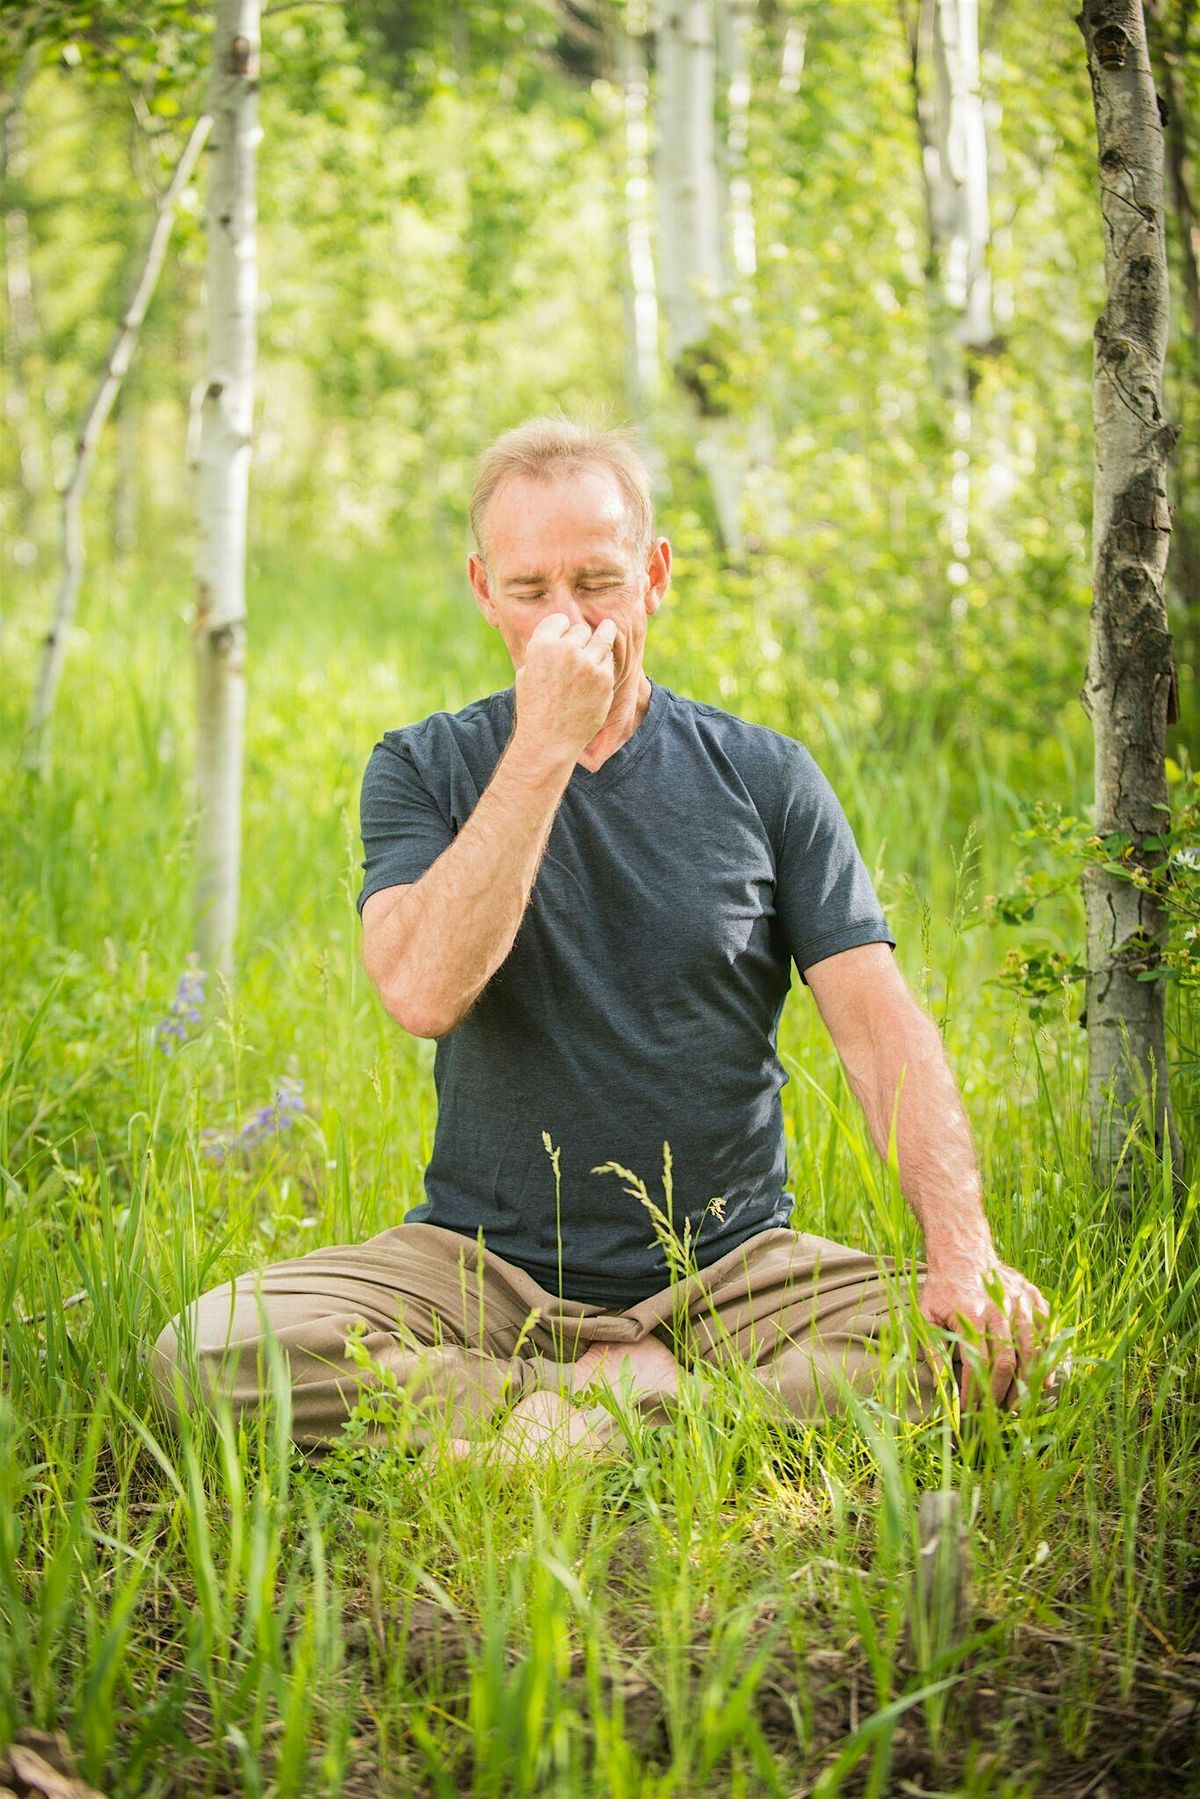 The Practice Of Pranayama Breathing